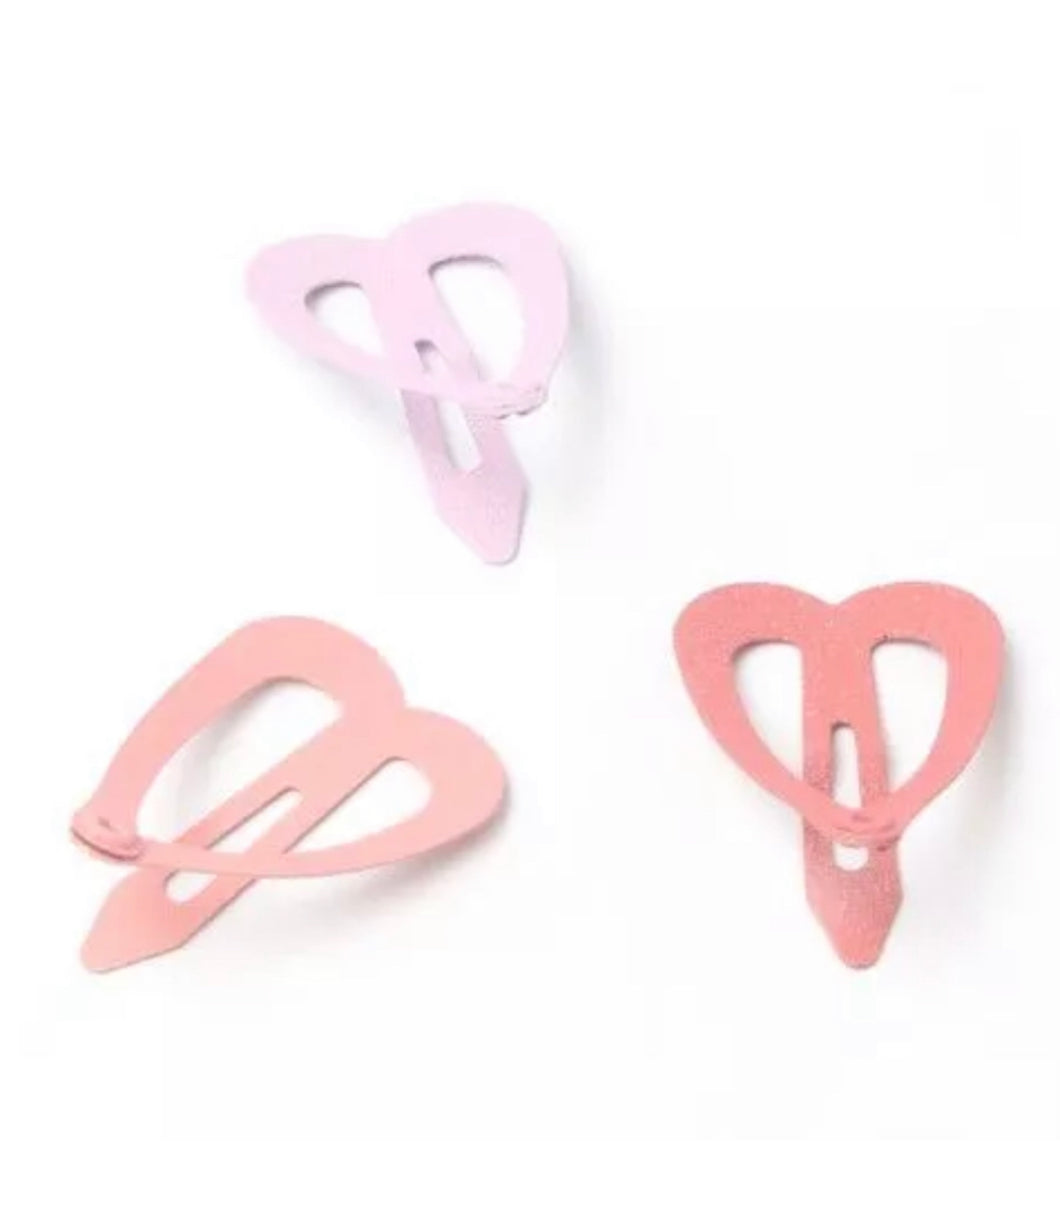 Cute heart shaped hair clip packs